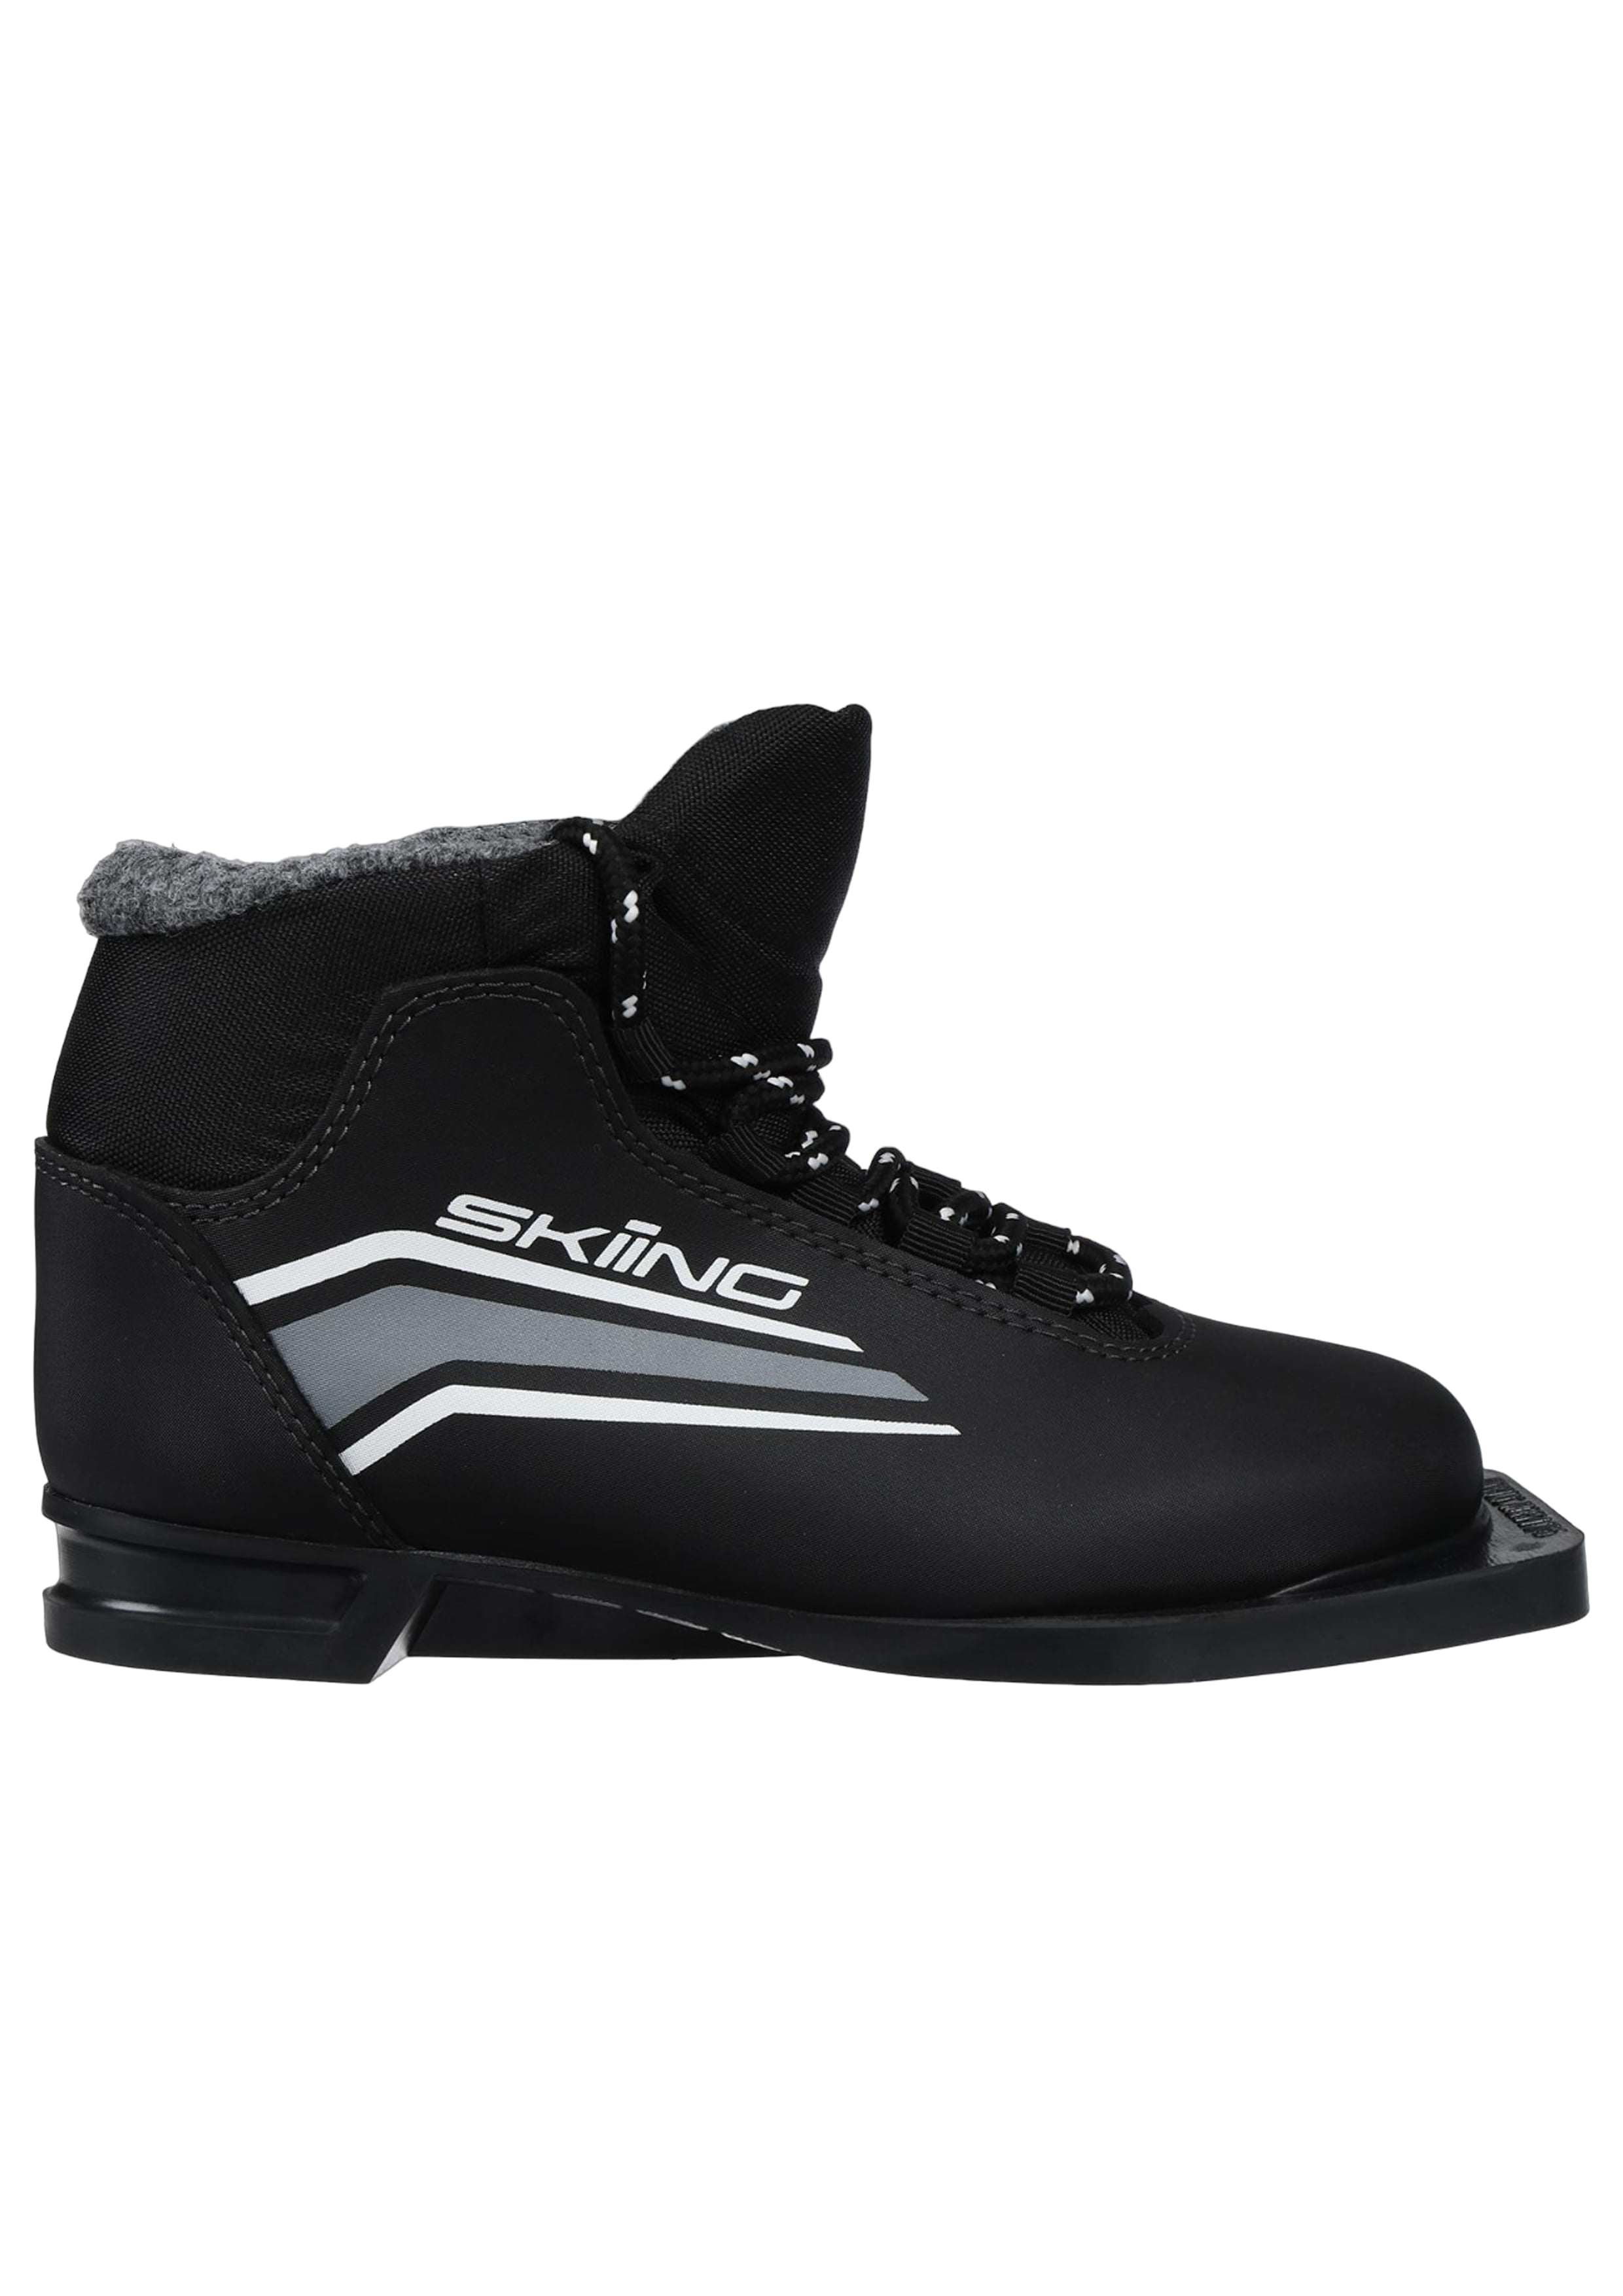 Ботинки лыжные 75мм TREK SkiingIK1 черный